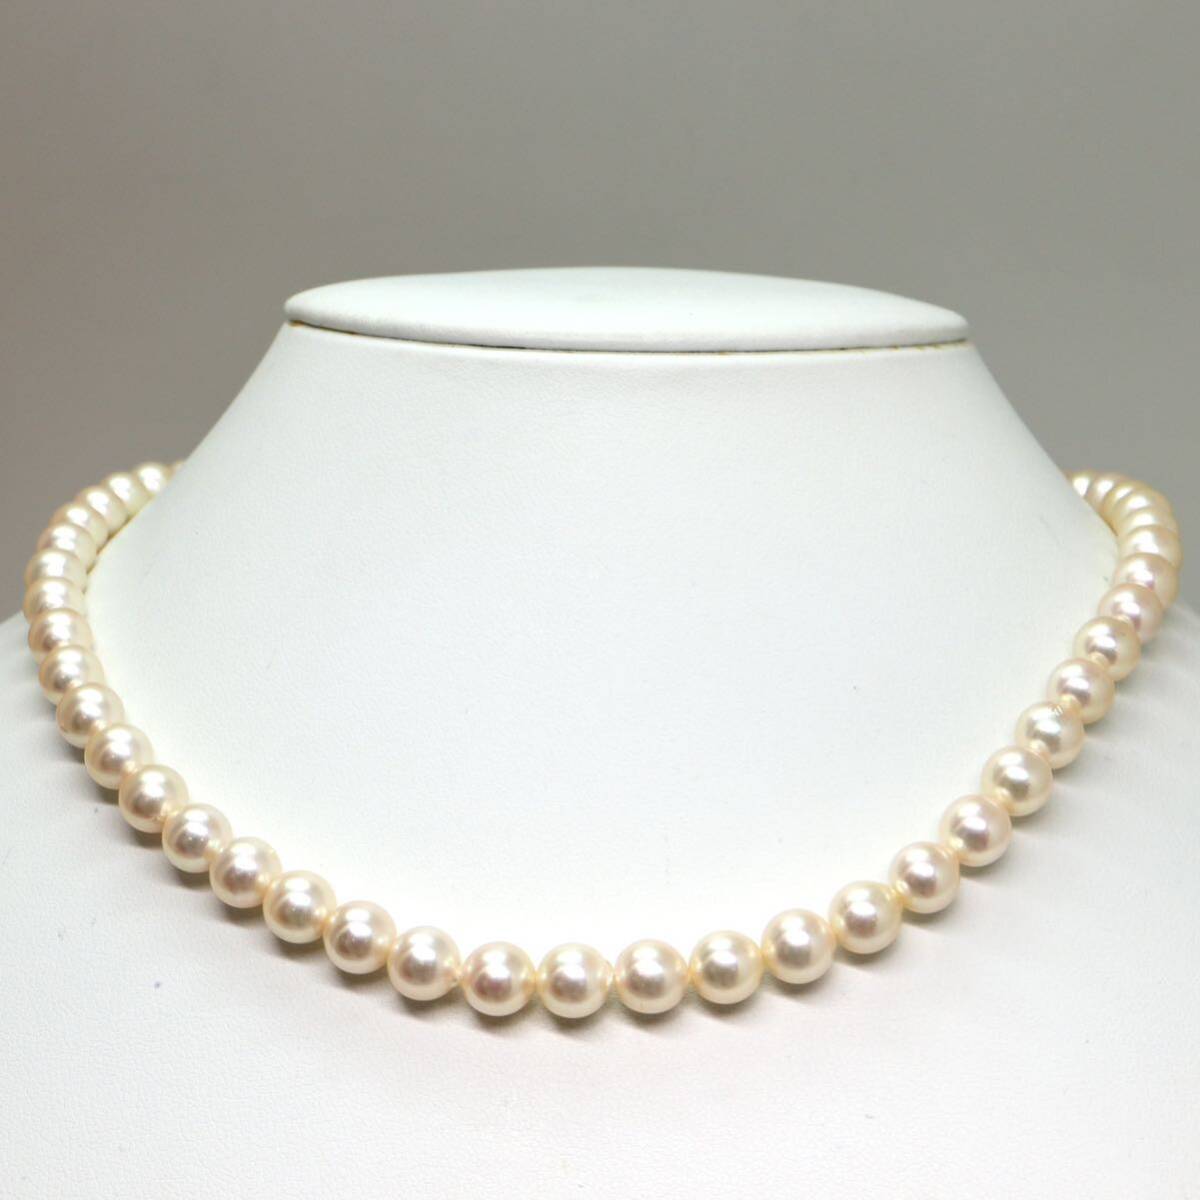 《アコヤ本真珠ネックレス》M 約7.0-7.5mm珠 32.8g 約41cm pearl necklace ジュエリー jewelry DH0/DI0_画像2